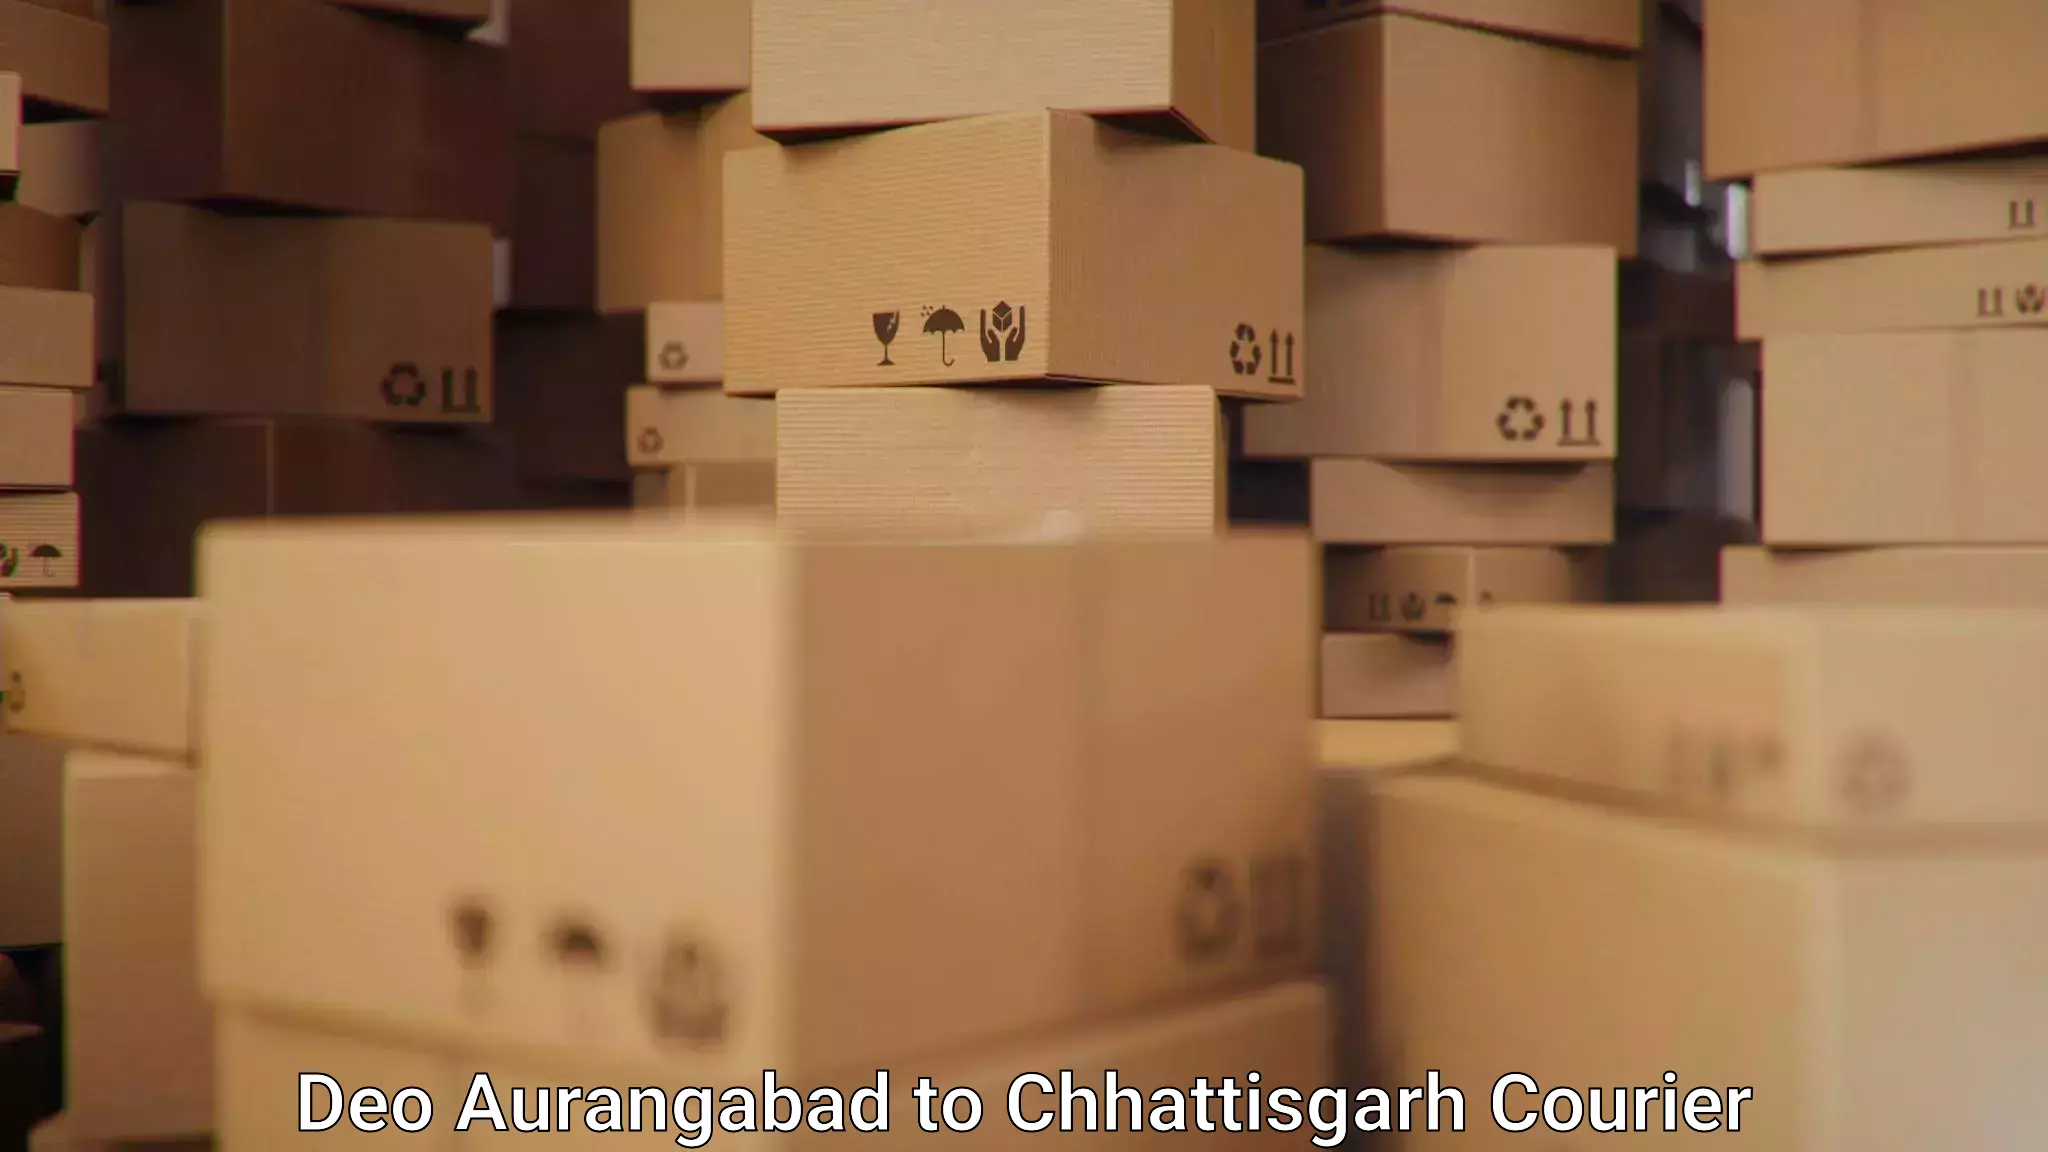 Efficient parcel transport Deo Aurangabad to Lailunga